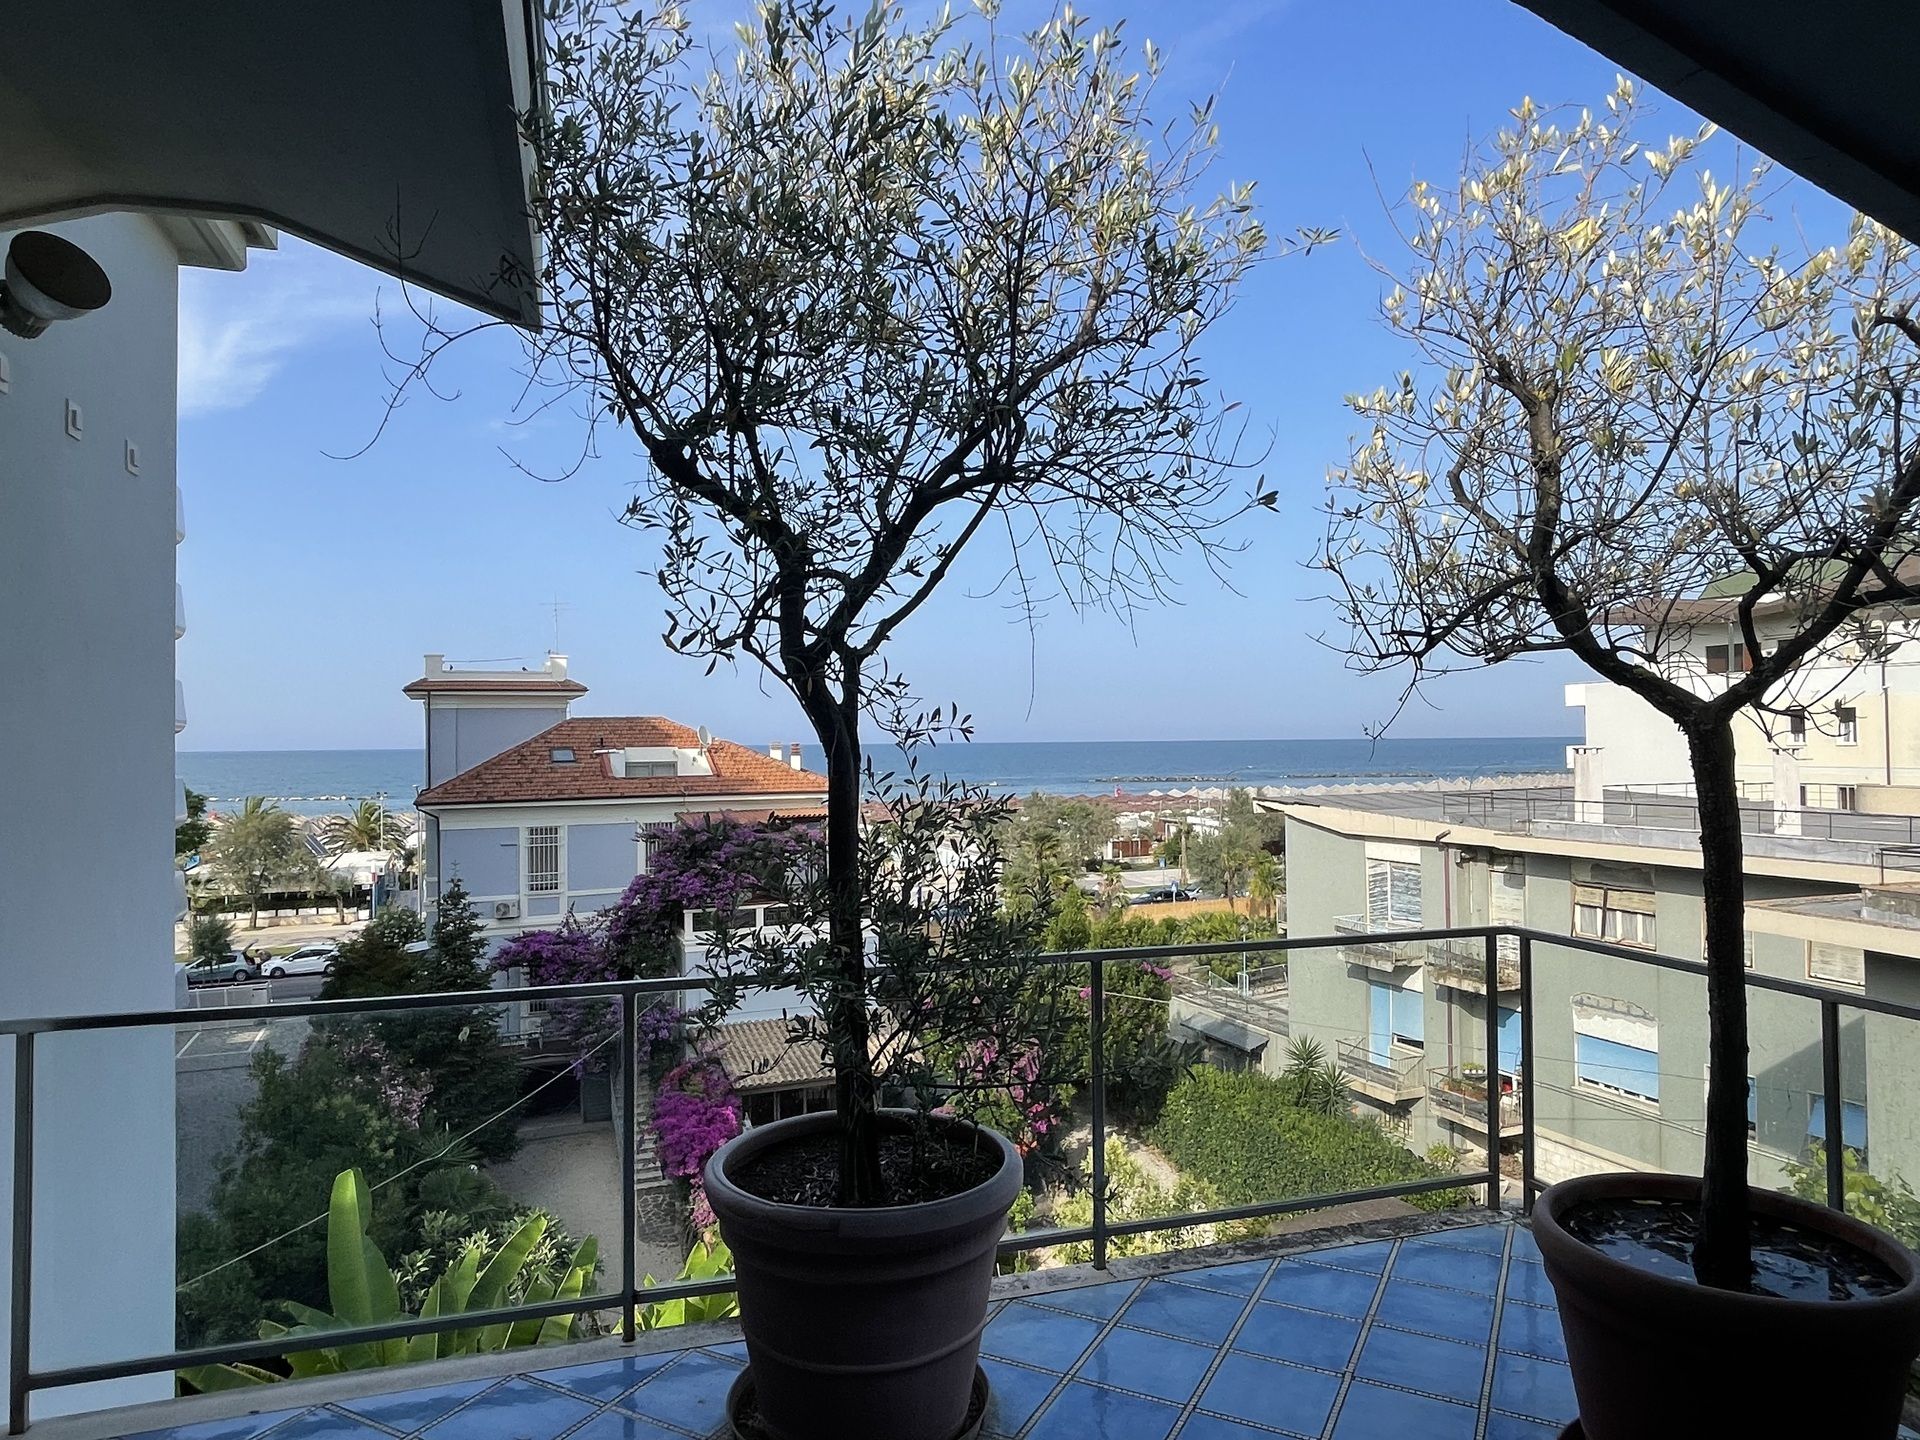 Vendita villa sul mare Pescara Abruzzo